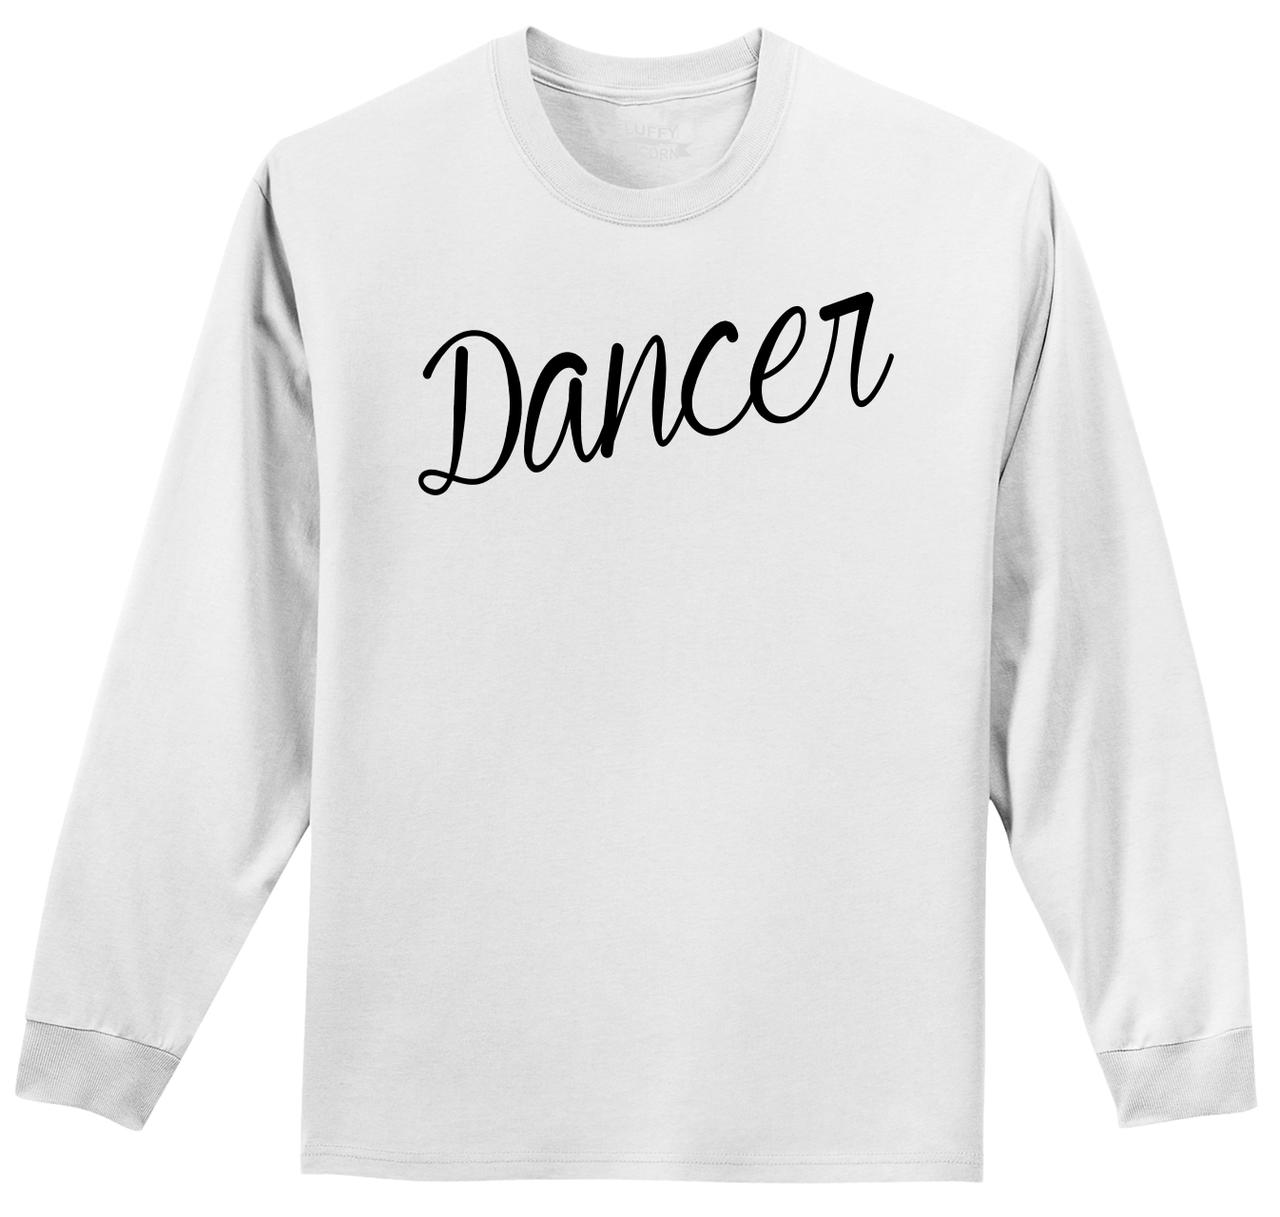 Dancer Long Sleeve T Shirt Dancer Gift Dance School Tee Shirt Z1 | eBay